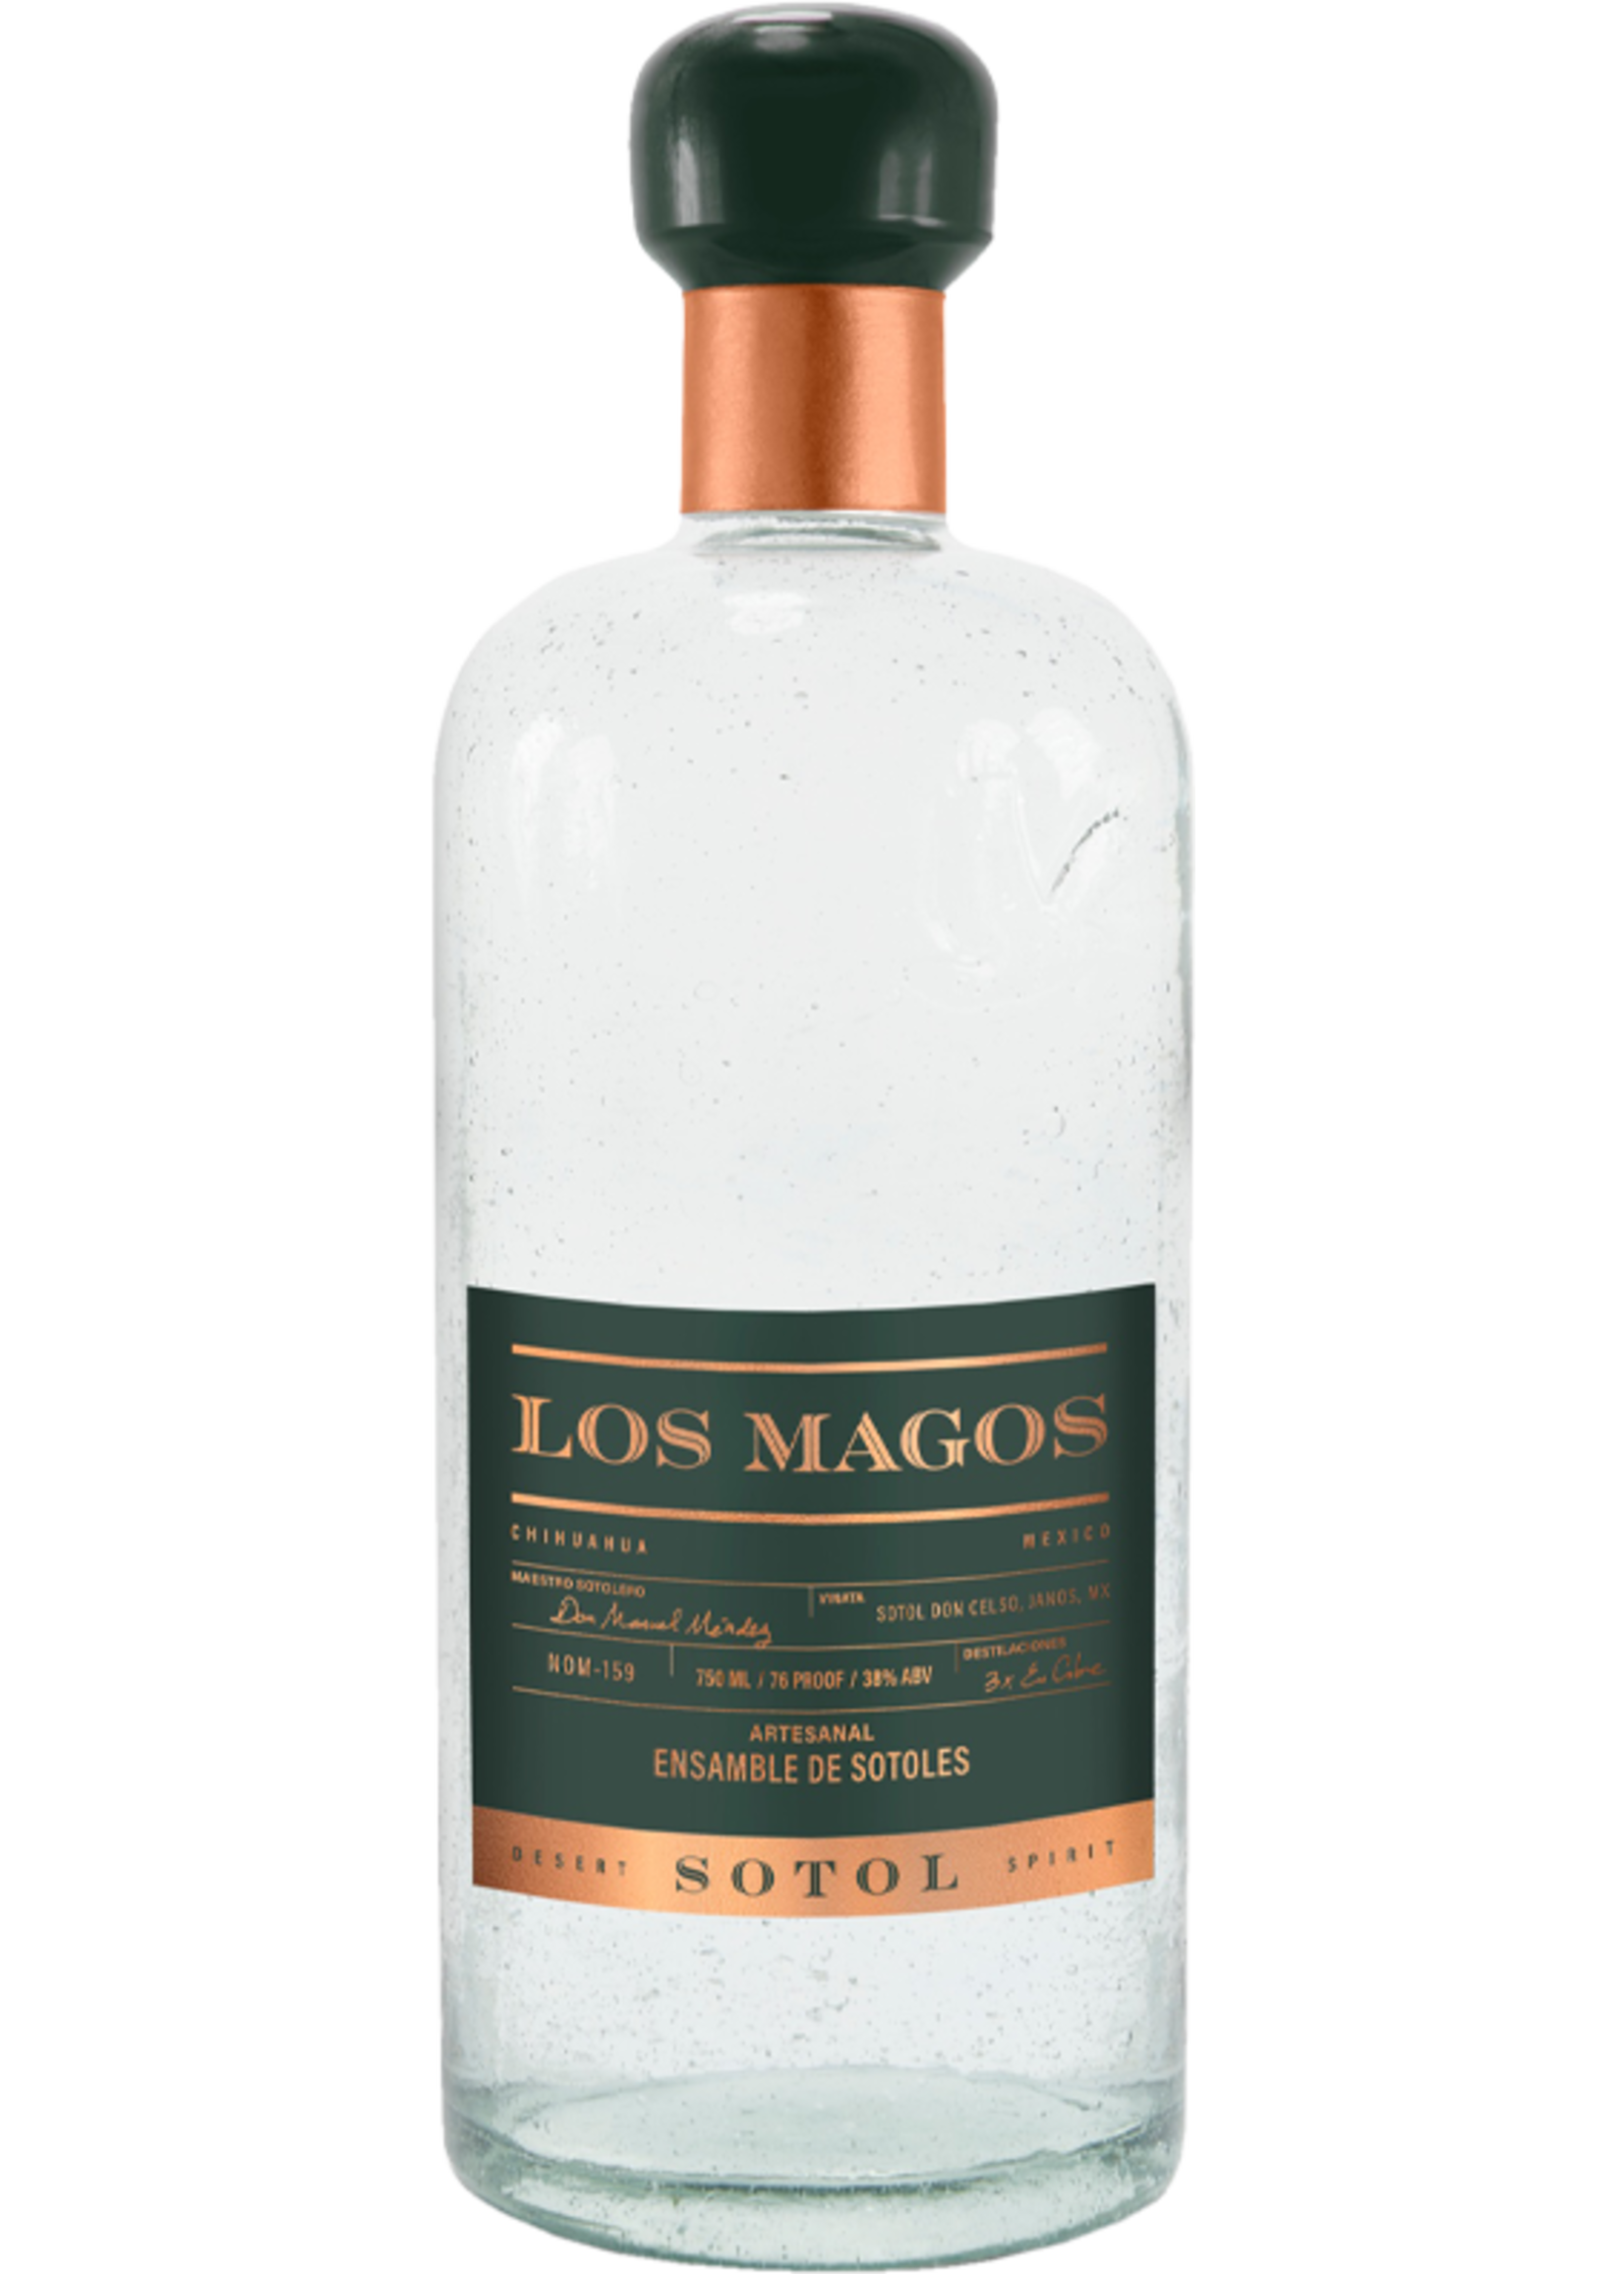 Los Magos Los Magos / Sotol 38% abv / 750mL